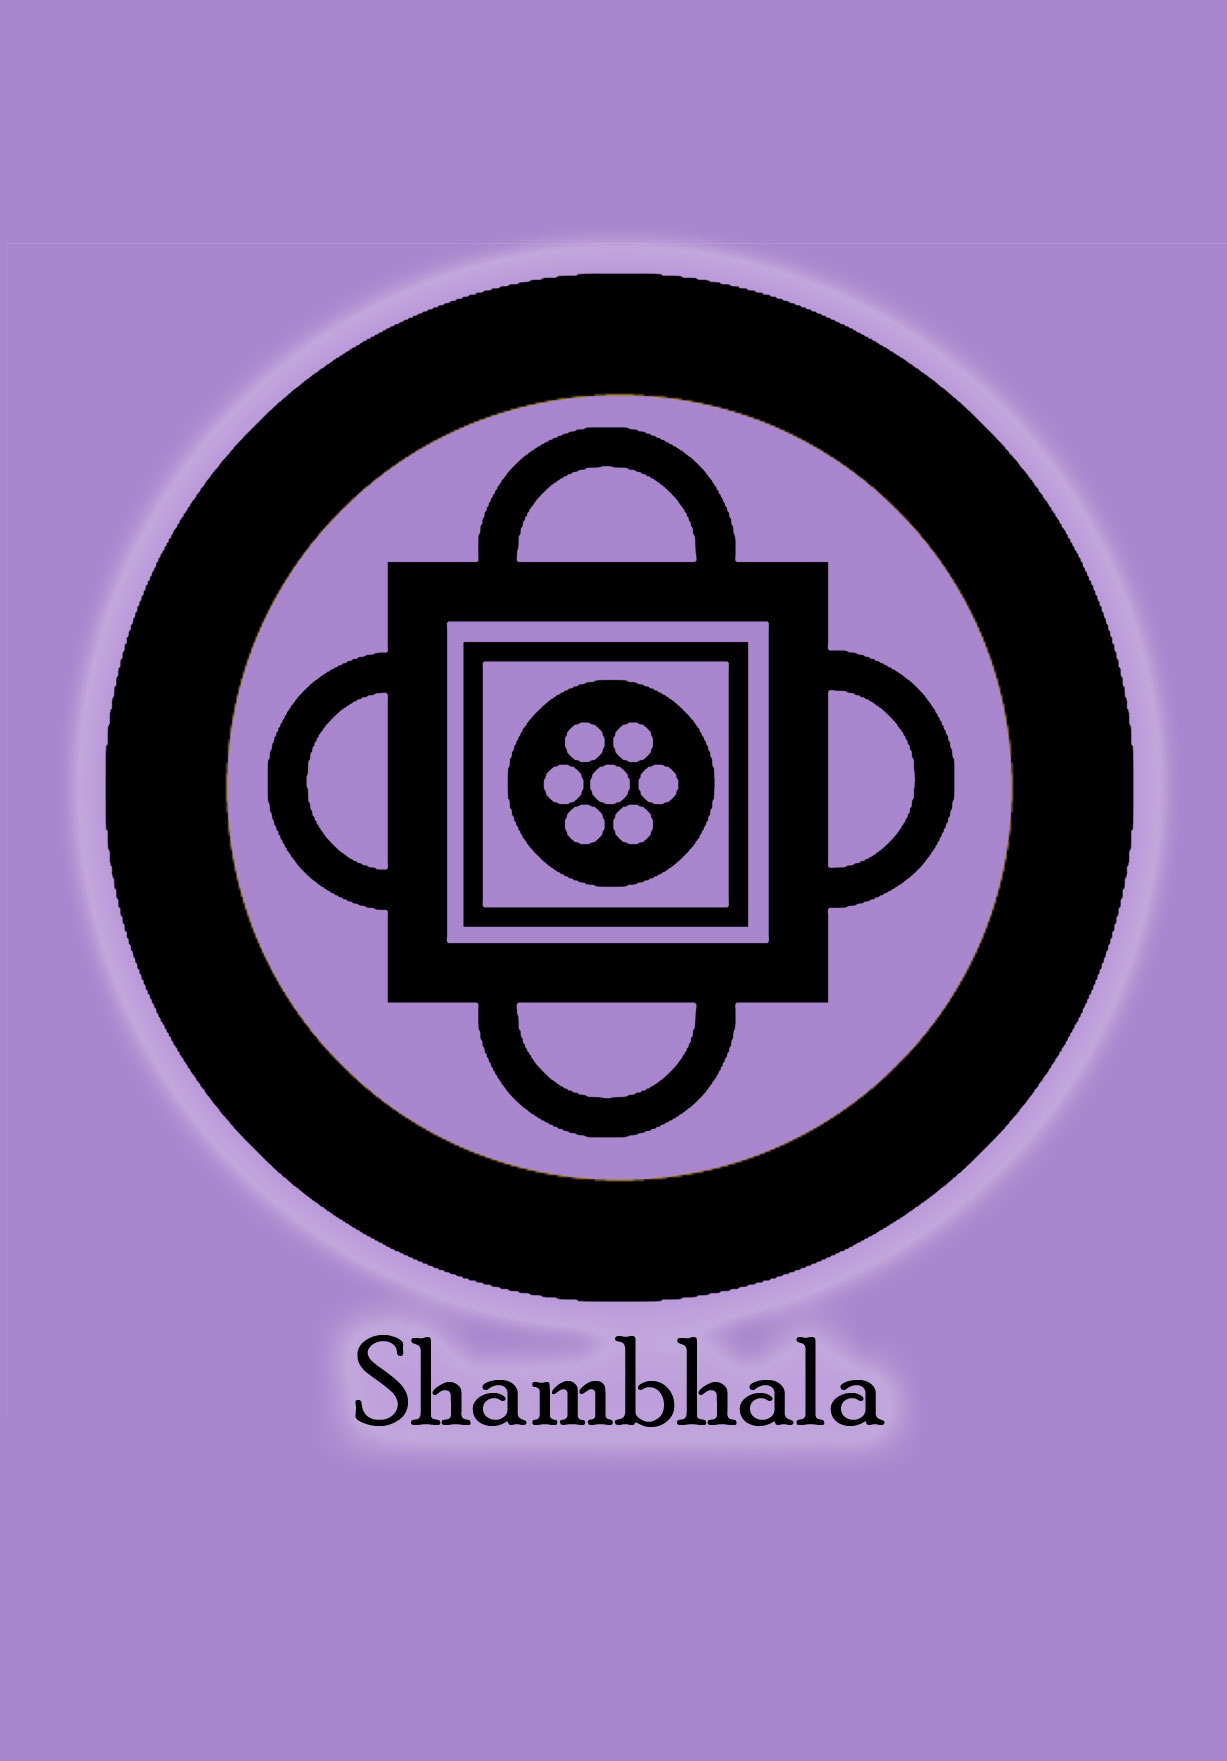 Shambhala - "El Lugar donde la Voluntad de Dios es conocida"